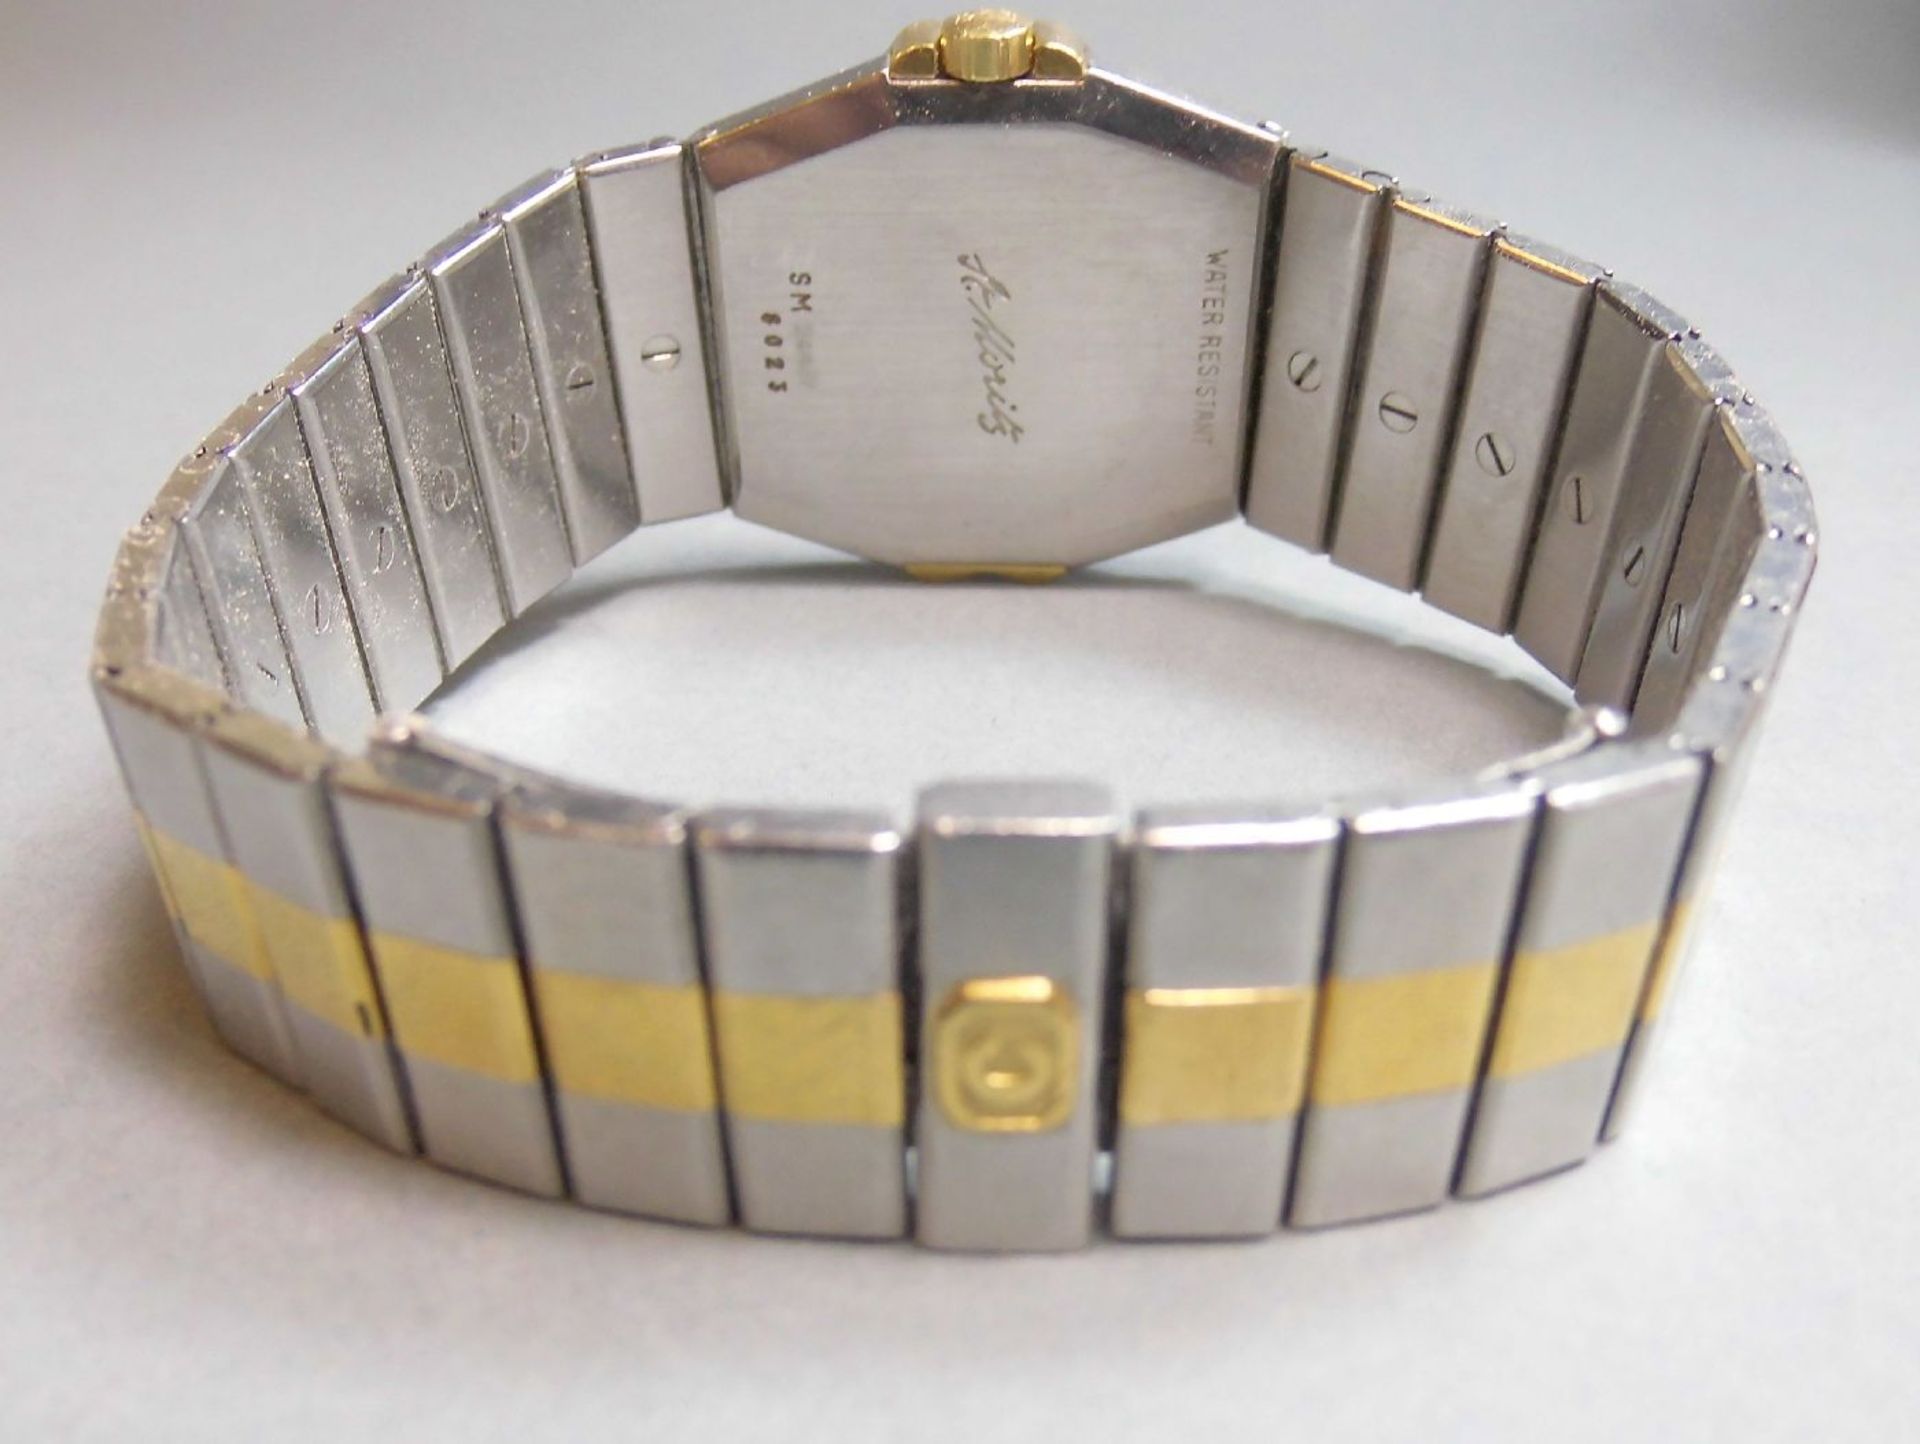 CHOPARD HERRENARMBANDUHR "ST. MORITZ" / wristwatch, Chopard / Genf, Stahl und 750er Gold, - Image 4 of 4